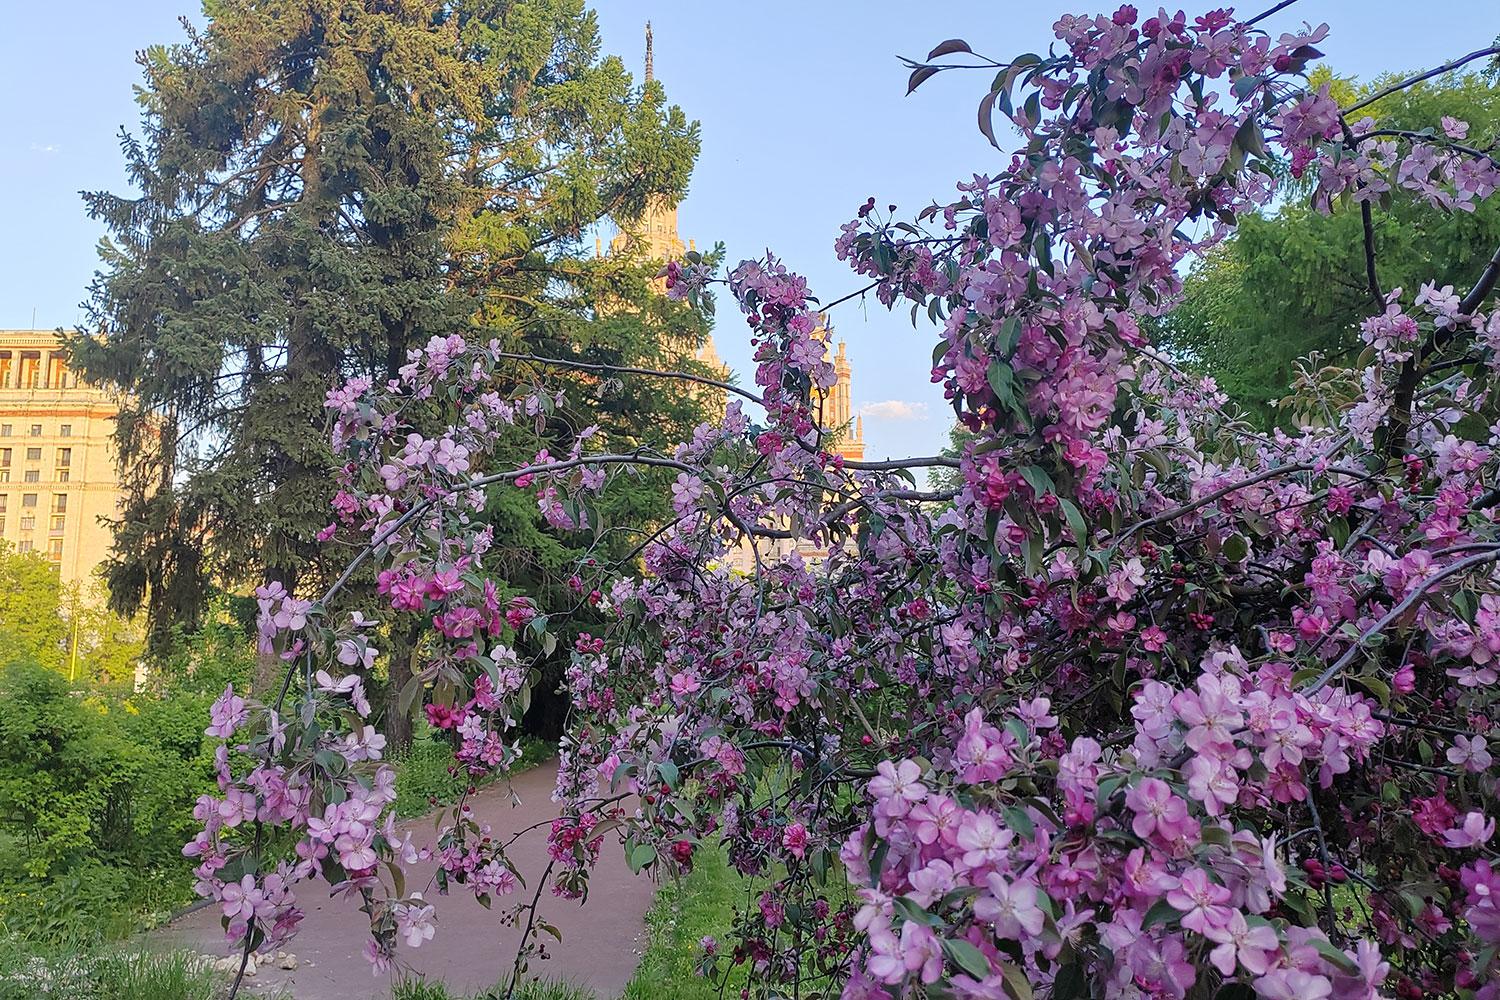 Лучшие фото (10 000+) по запросу «Весна» · Скачивайте совершенно бесплатно  · Стоковые фото Pexels